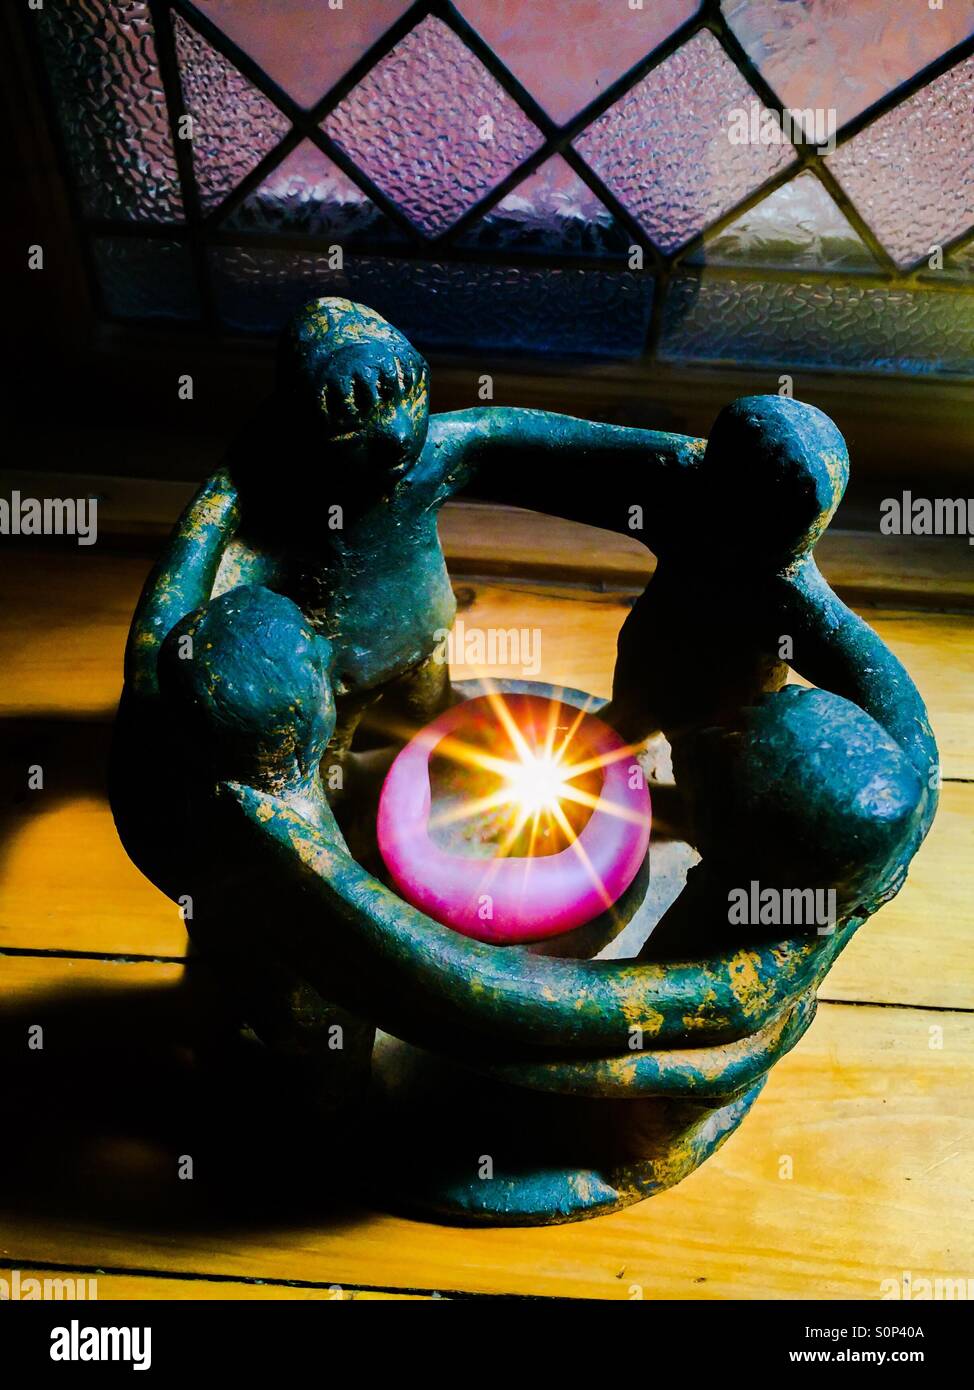 Cercle lumineux.Image emblématique de quatre humains, bras reliés, autour d'un point de lumière.Concepts : humanité, famille humaine, connecté, connexion, famille,Inspiration, cercle vertueux, Ubuntu. Banque D'Images